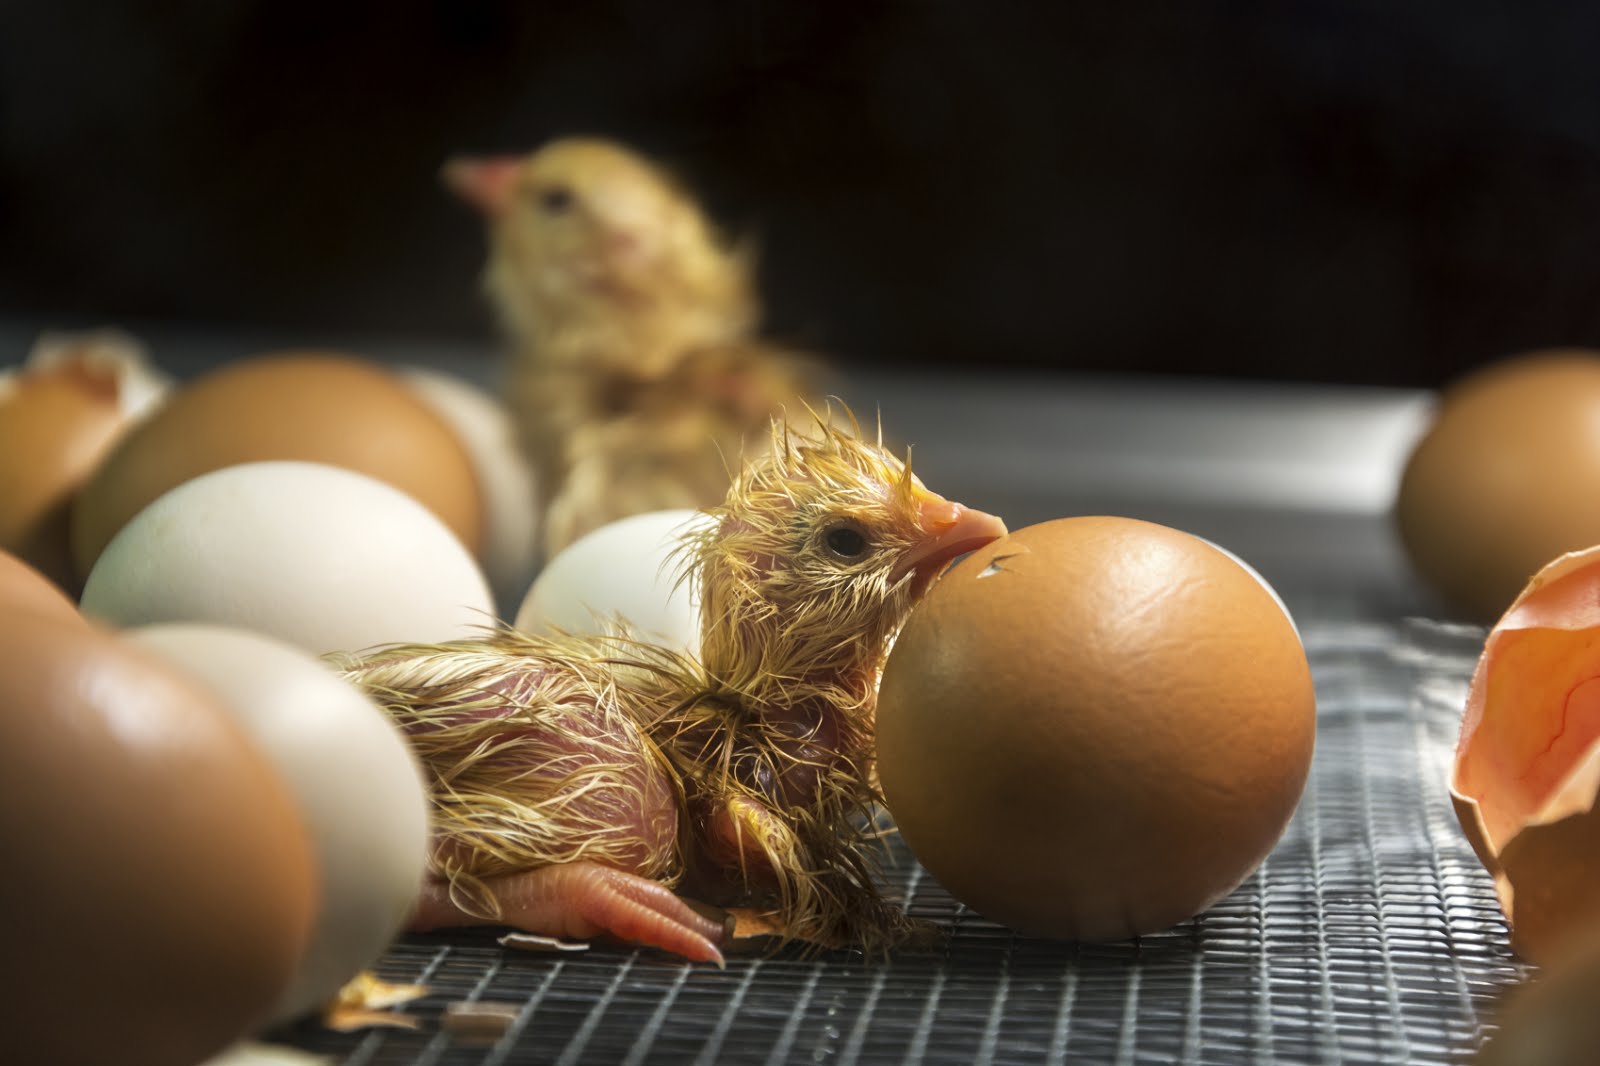 Hatching eggs. Цыпленок вылупляется. Цыпленок вылупляется из яйца. Цыпленок вылупился. Курица с яйцами.